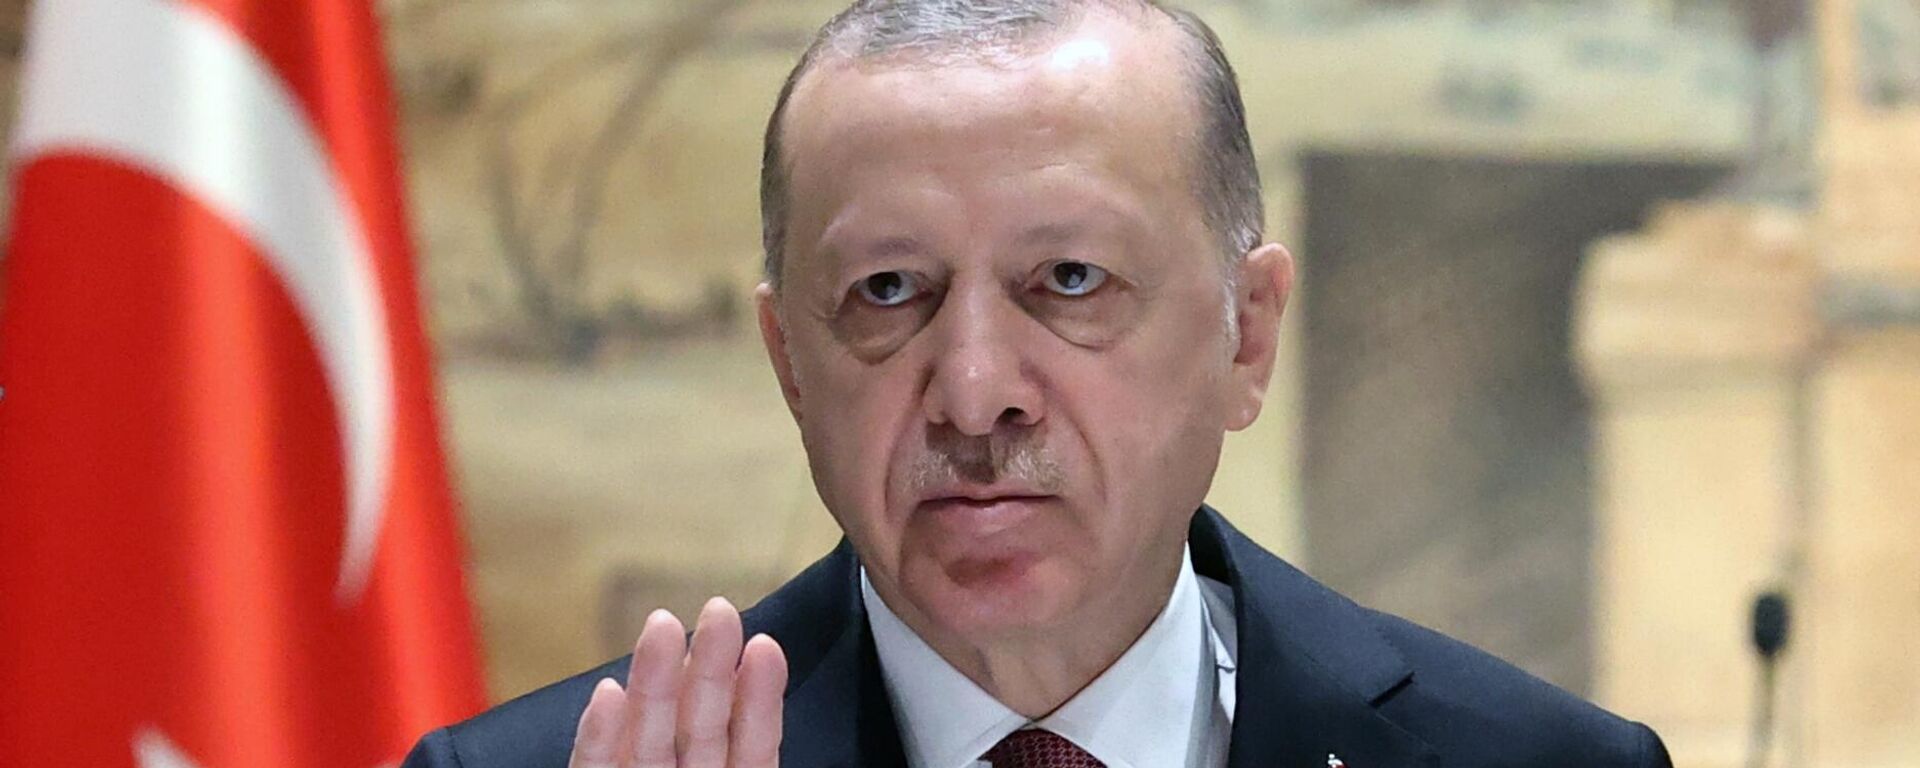 O presidente turco Recep Tayyip Erdogan discursa durante as negociações entre a Rússia e a Ucrânia no Palácio Dolmabahce, Istambul, Turquia  - Sputnik Brasil, 1920, 17.08.2022